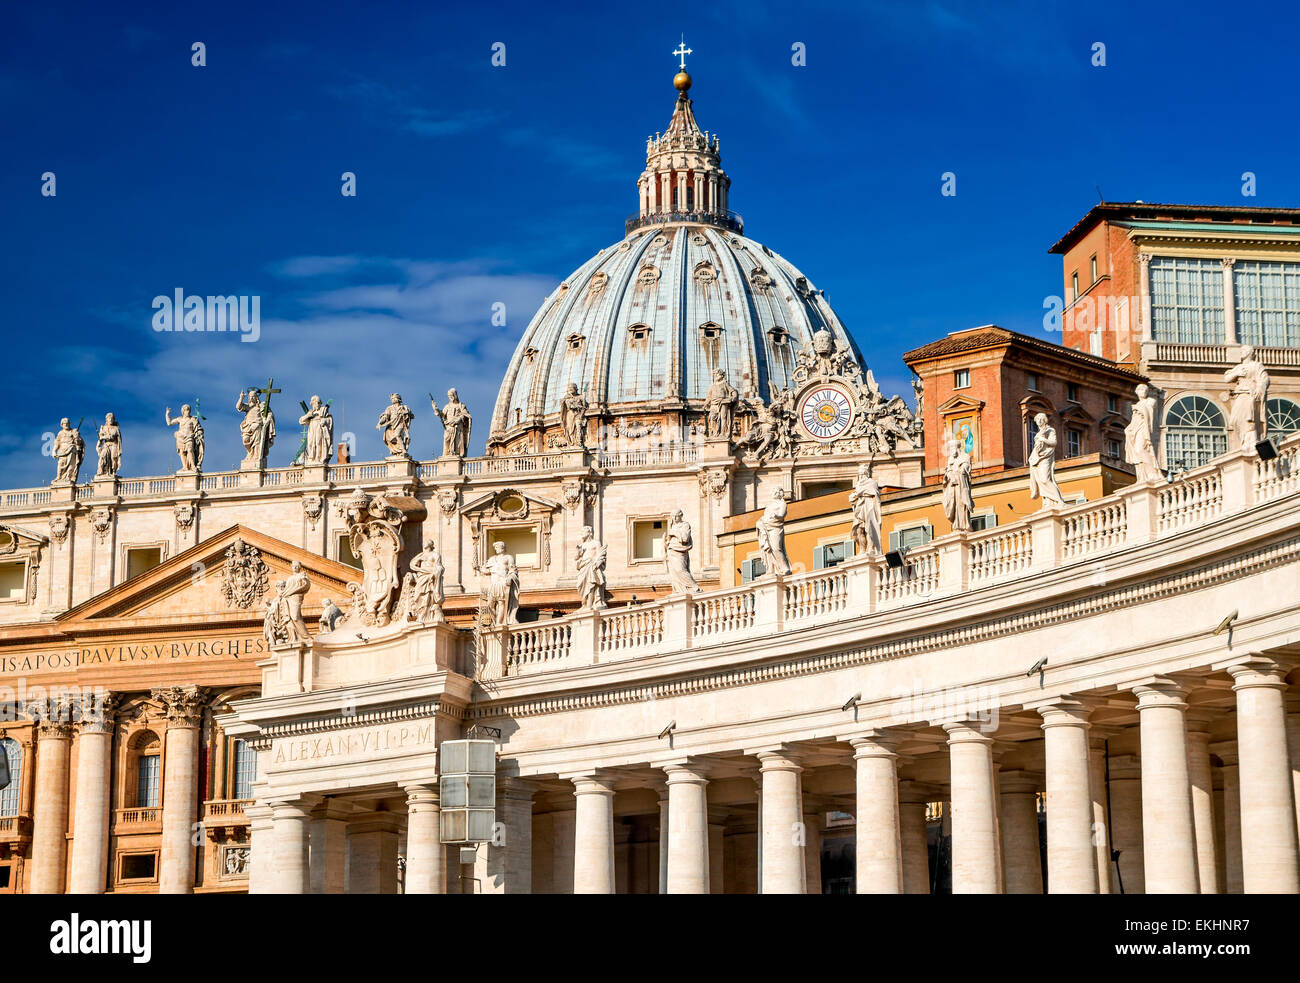 Sonnenaufgang am St. Peter Basilica von Vatikan, wichtigste religiöse katholische Kirche, Vatikan und Papst Residenz. Italien-Wahrzeichen. Stockfoto